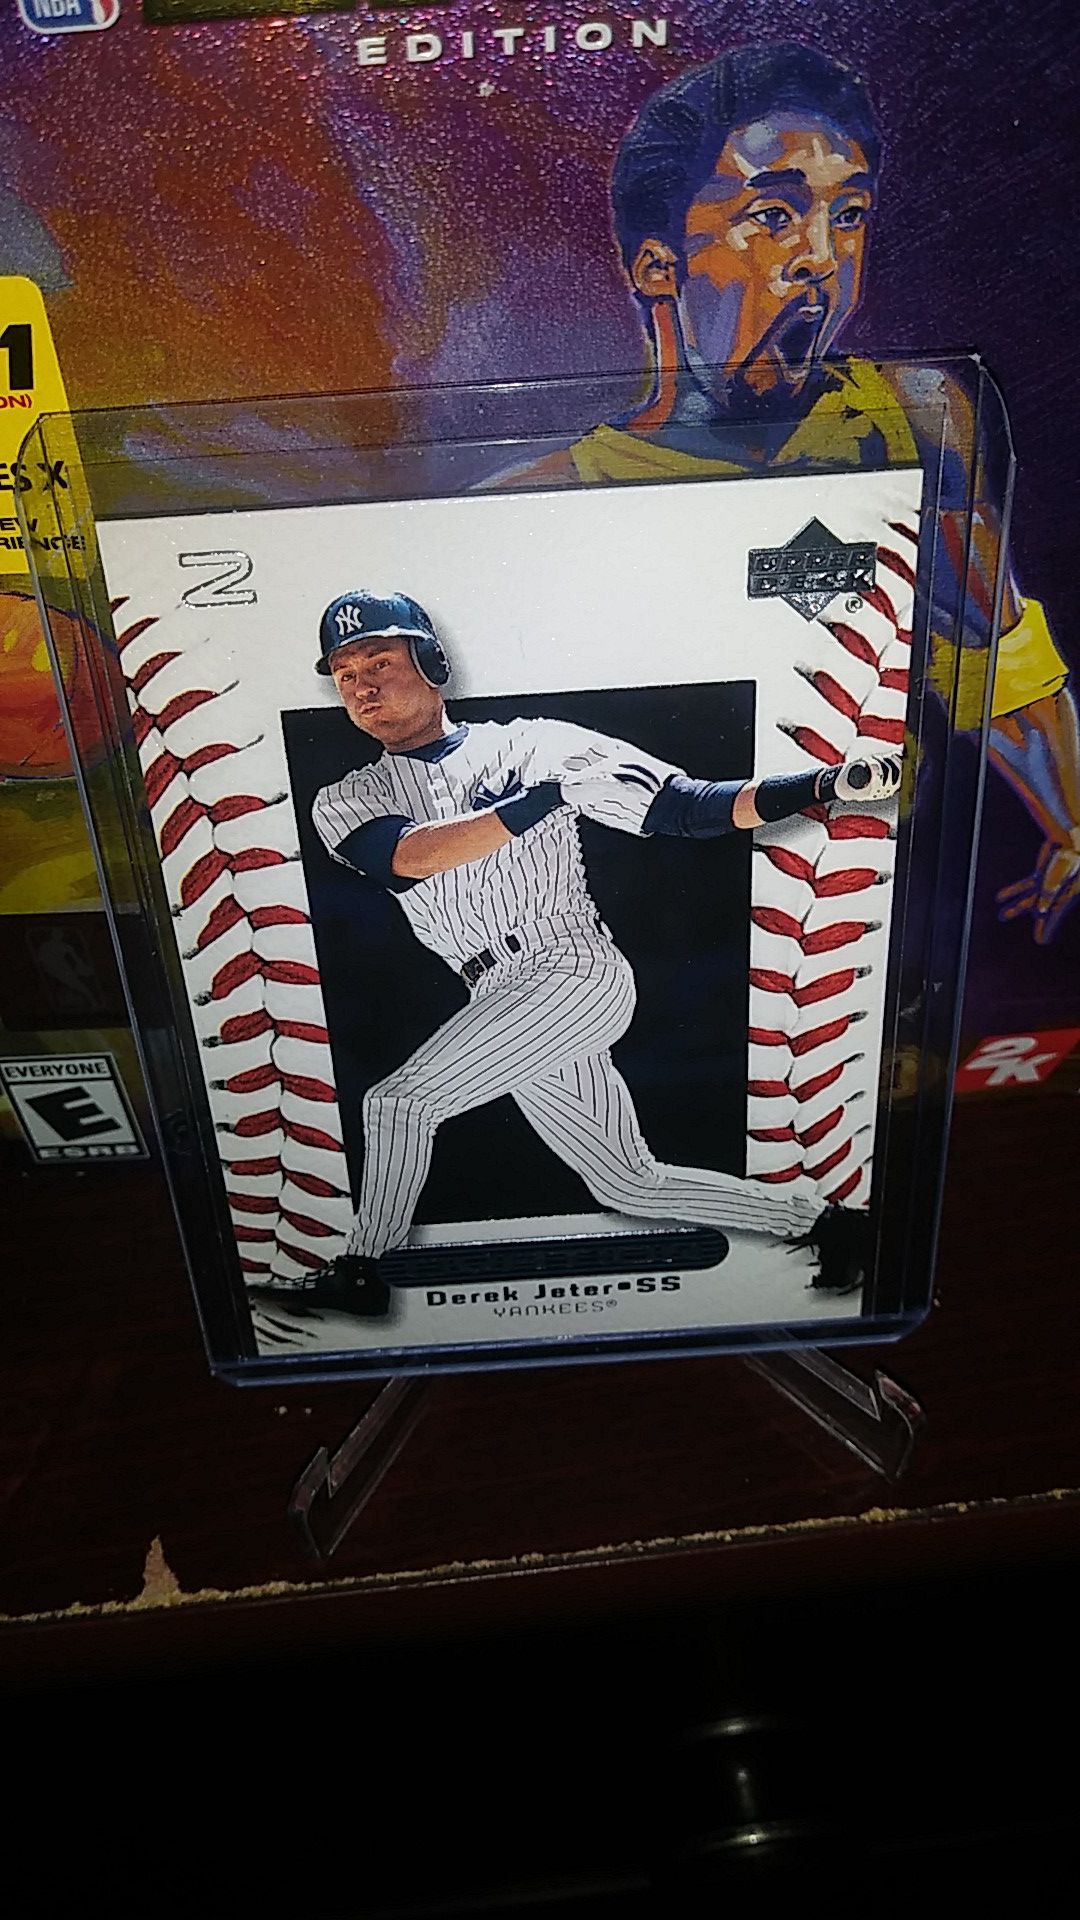 2000 Upper Deck Baseball! Hot Derek Jeter 'Ovation' Card!